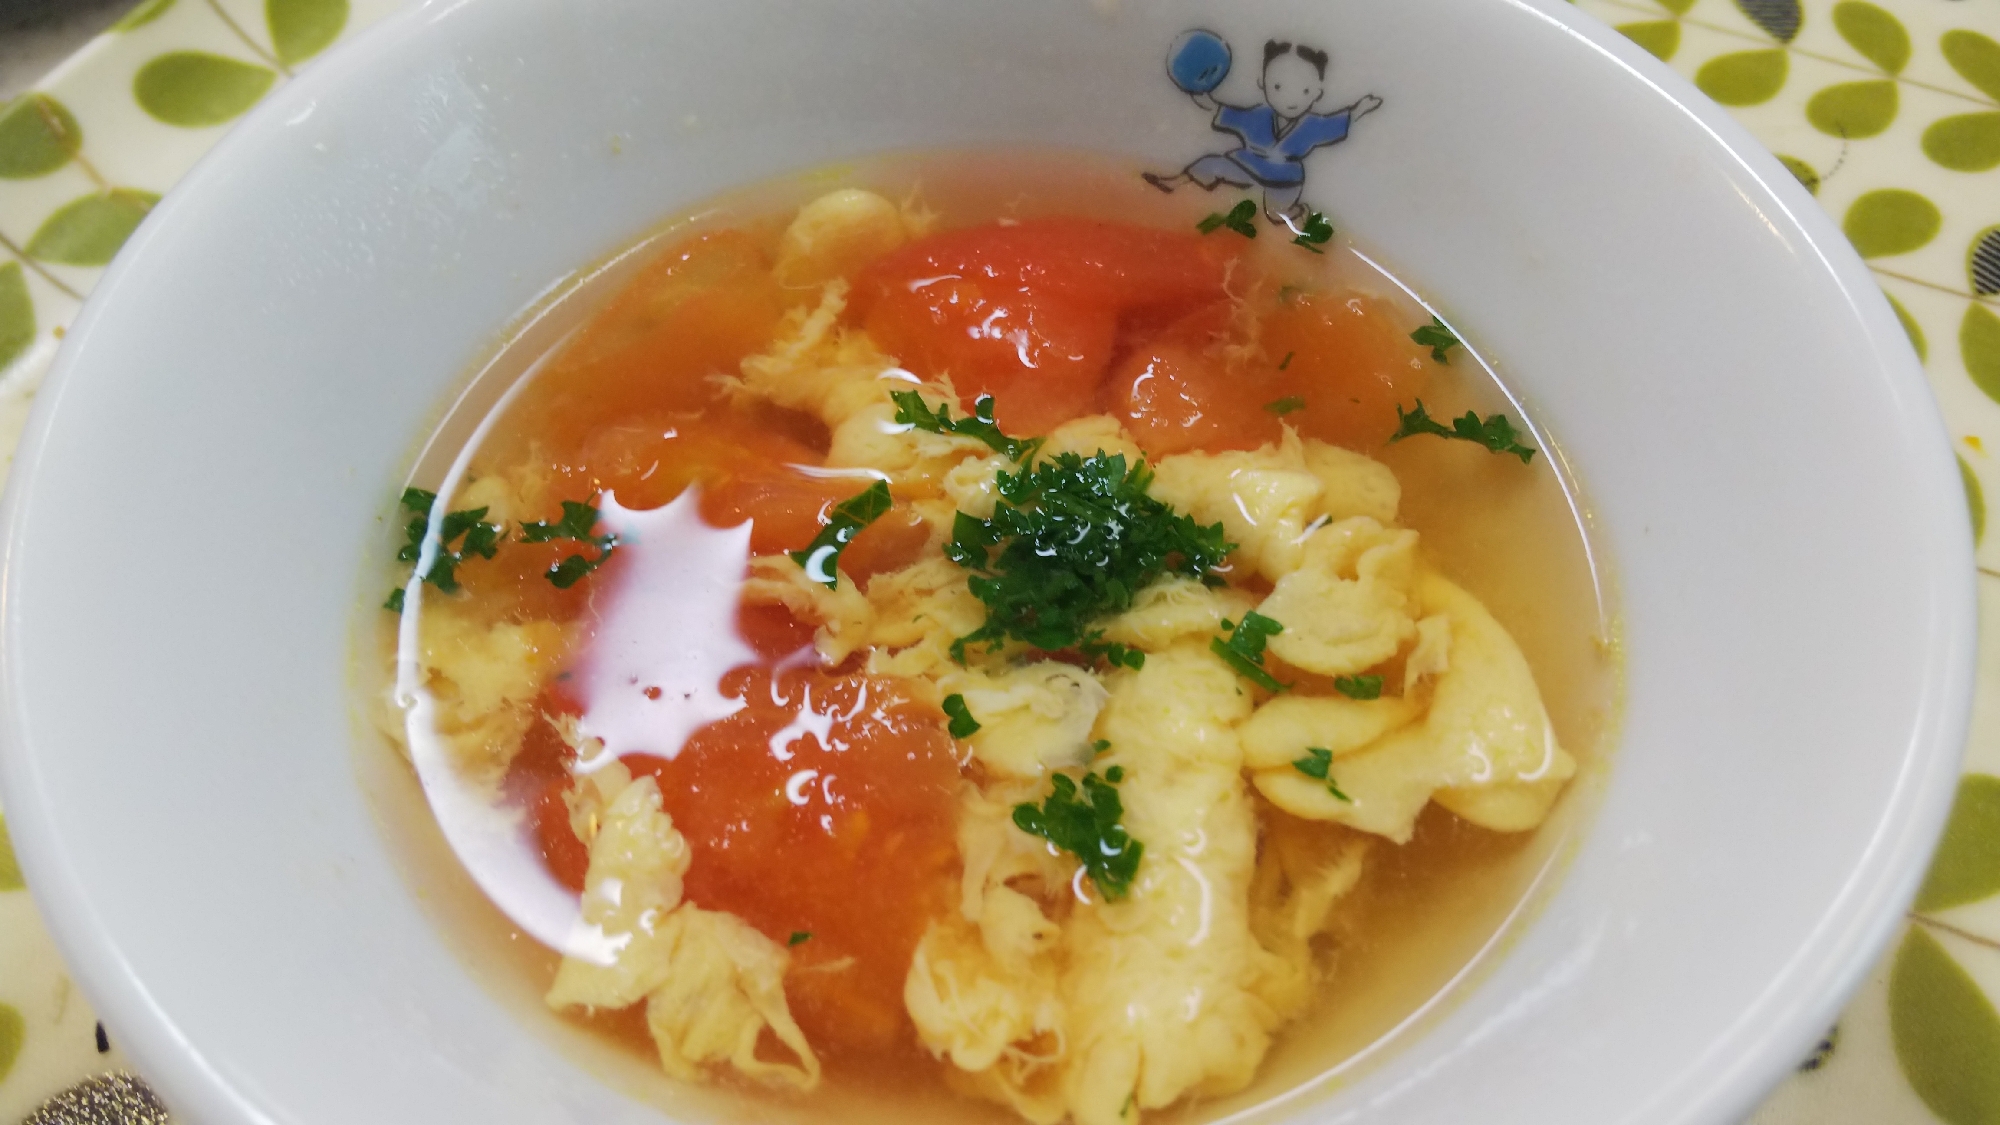 トマトと卵のコンソメスープ